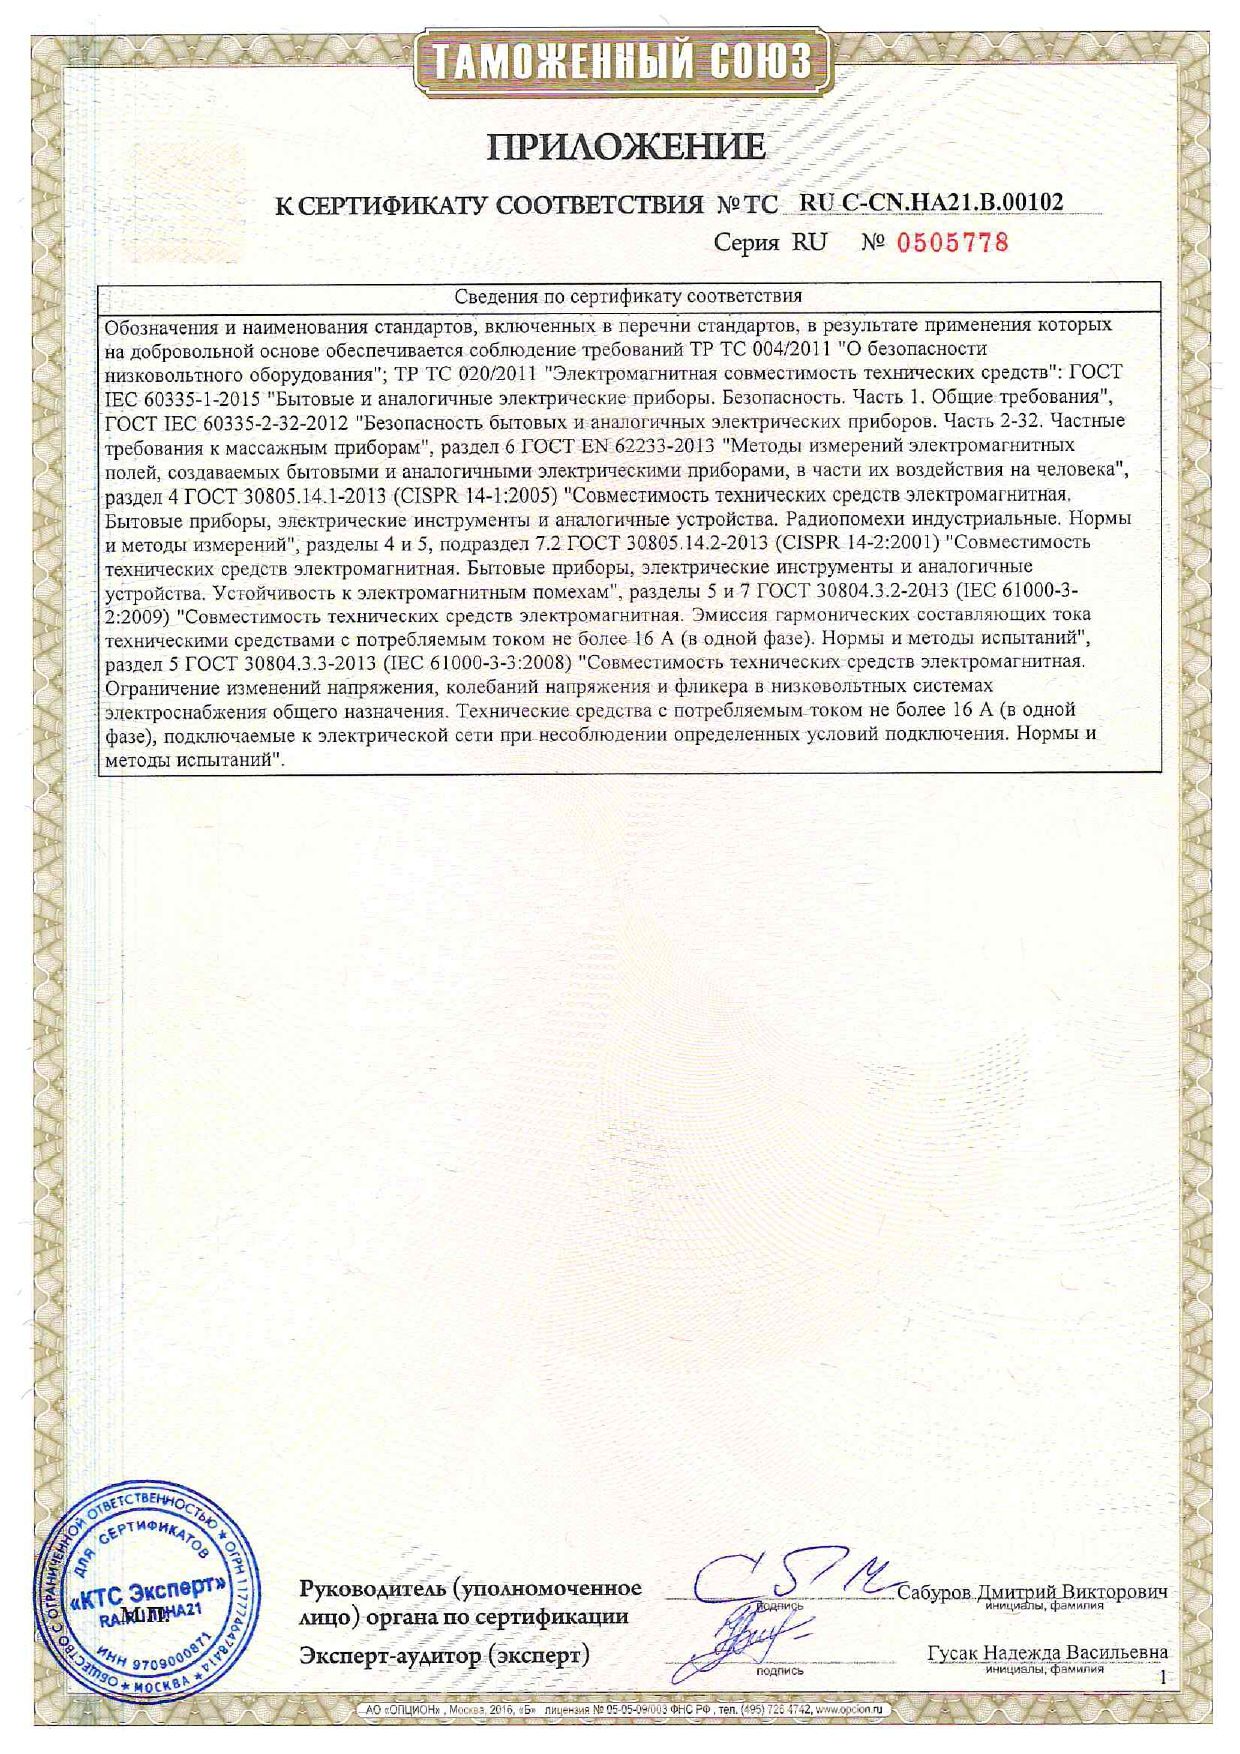 Вибромассажер CS Medica VibraPulsar CS-v1 сертификат